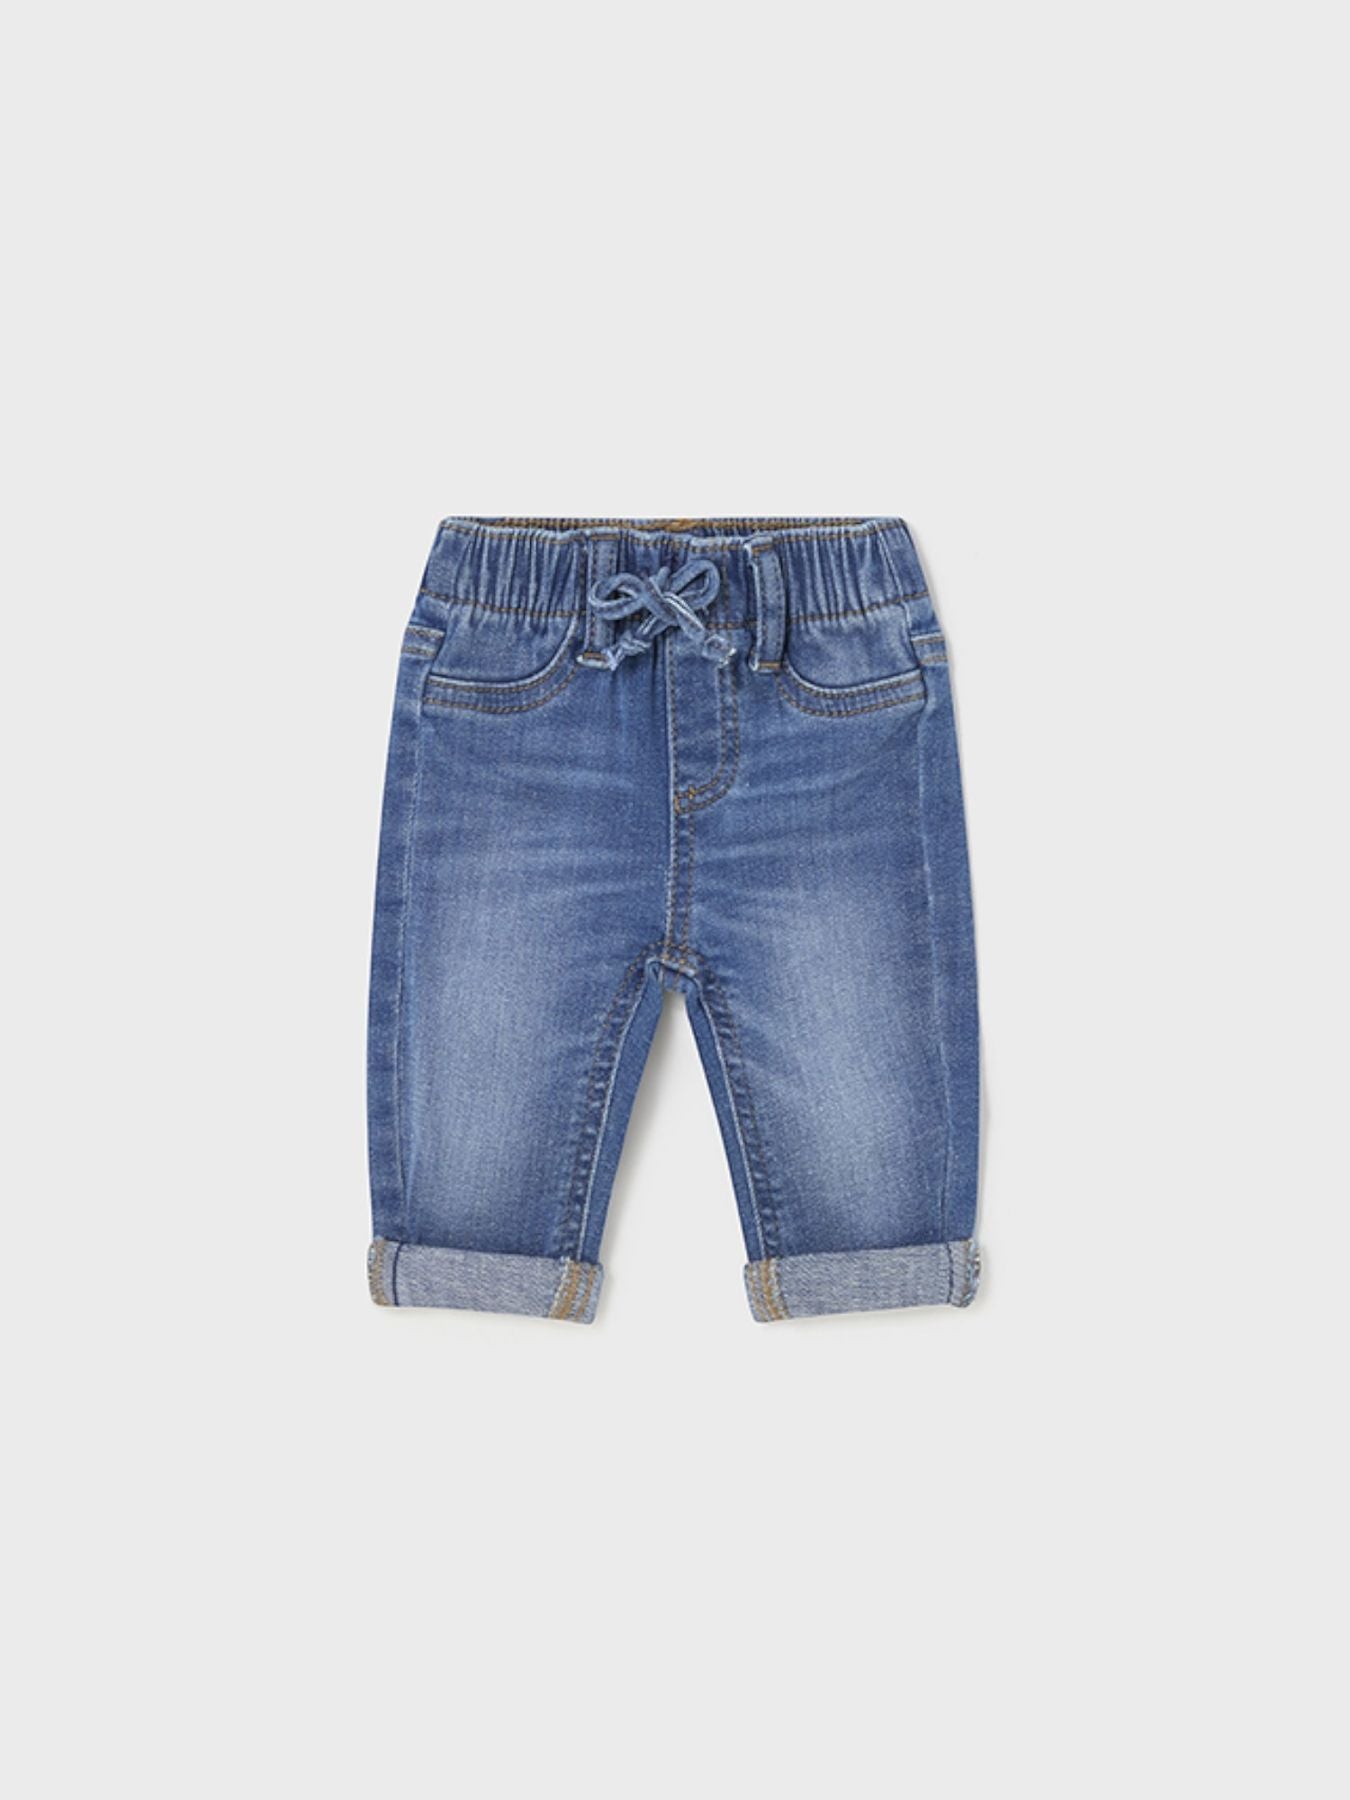 Pantalone lungo jeans - 596/D